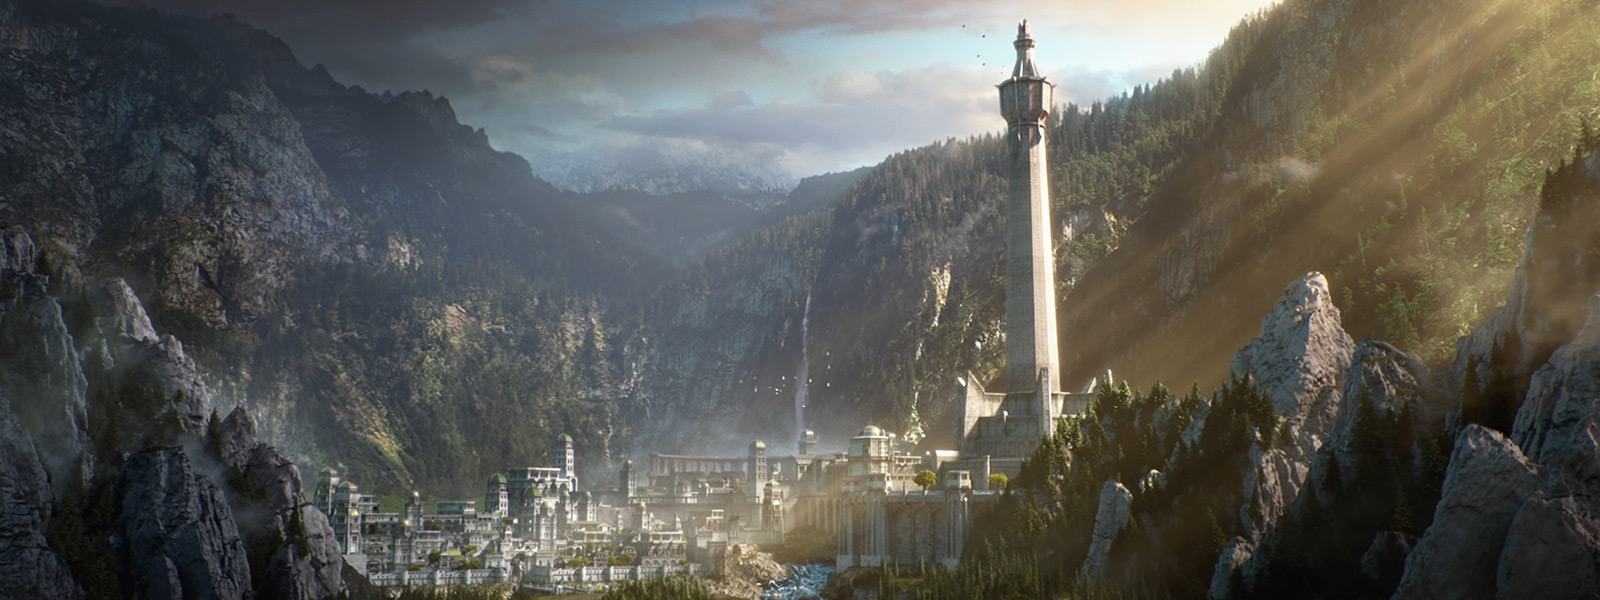 De zon schijnt op de witte stad Minas Ithil uit de game Middle-earth: Shadow of War